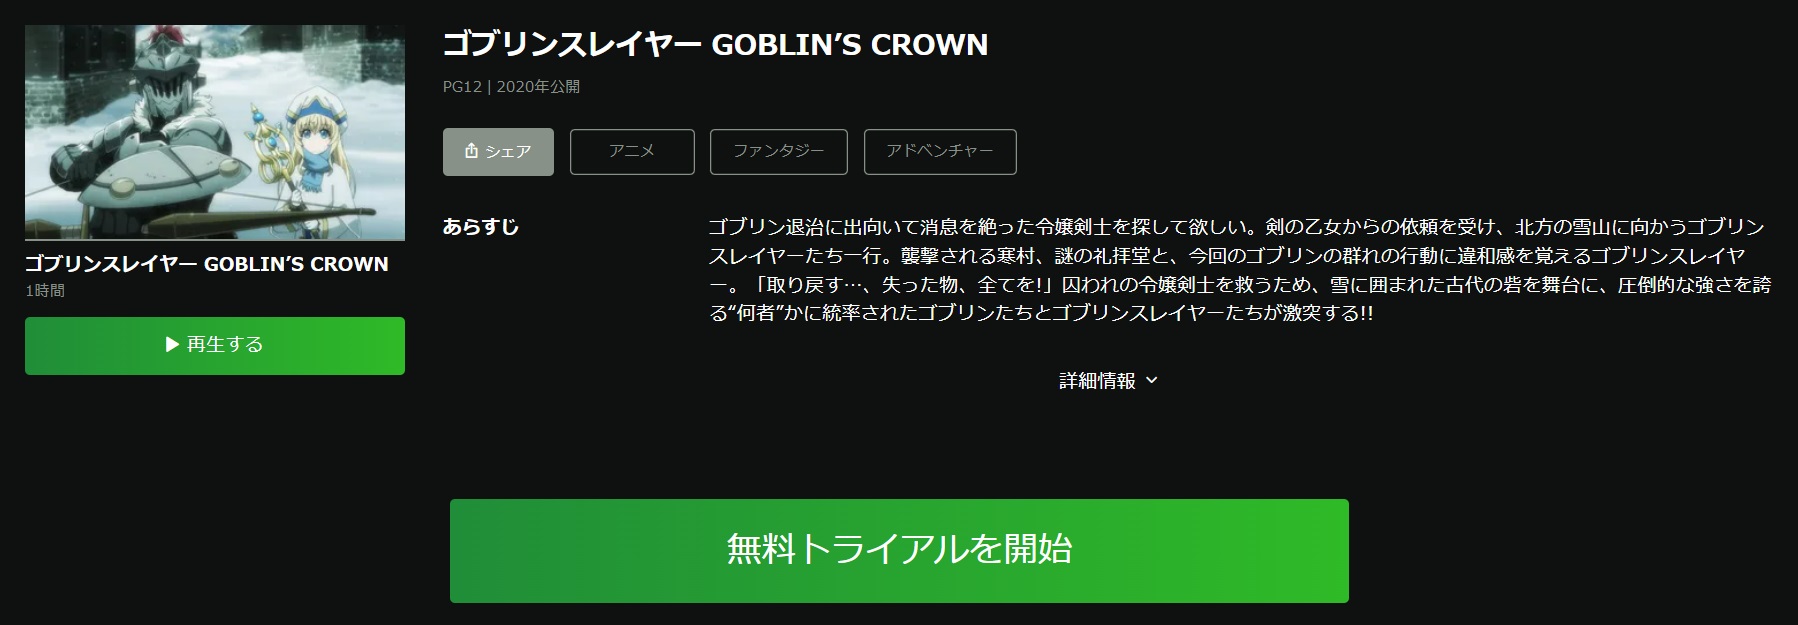 ゴブリンスレイヤー-GOBLIN'S CROWN-